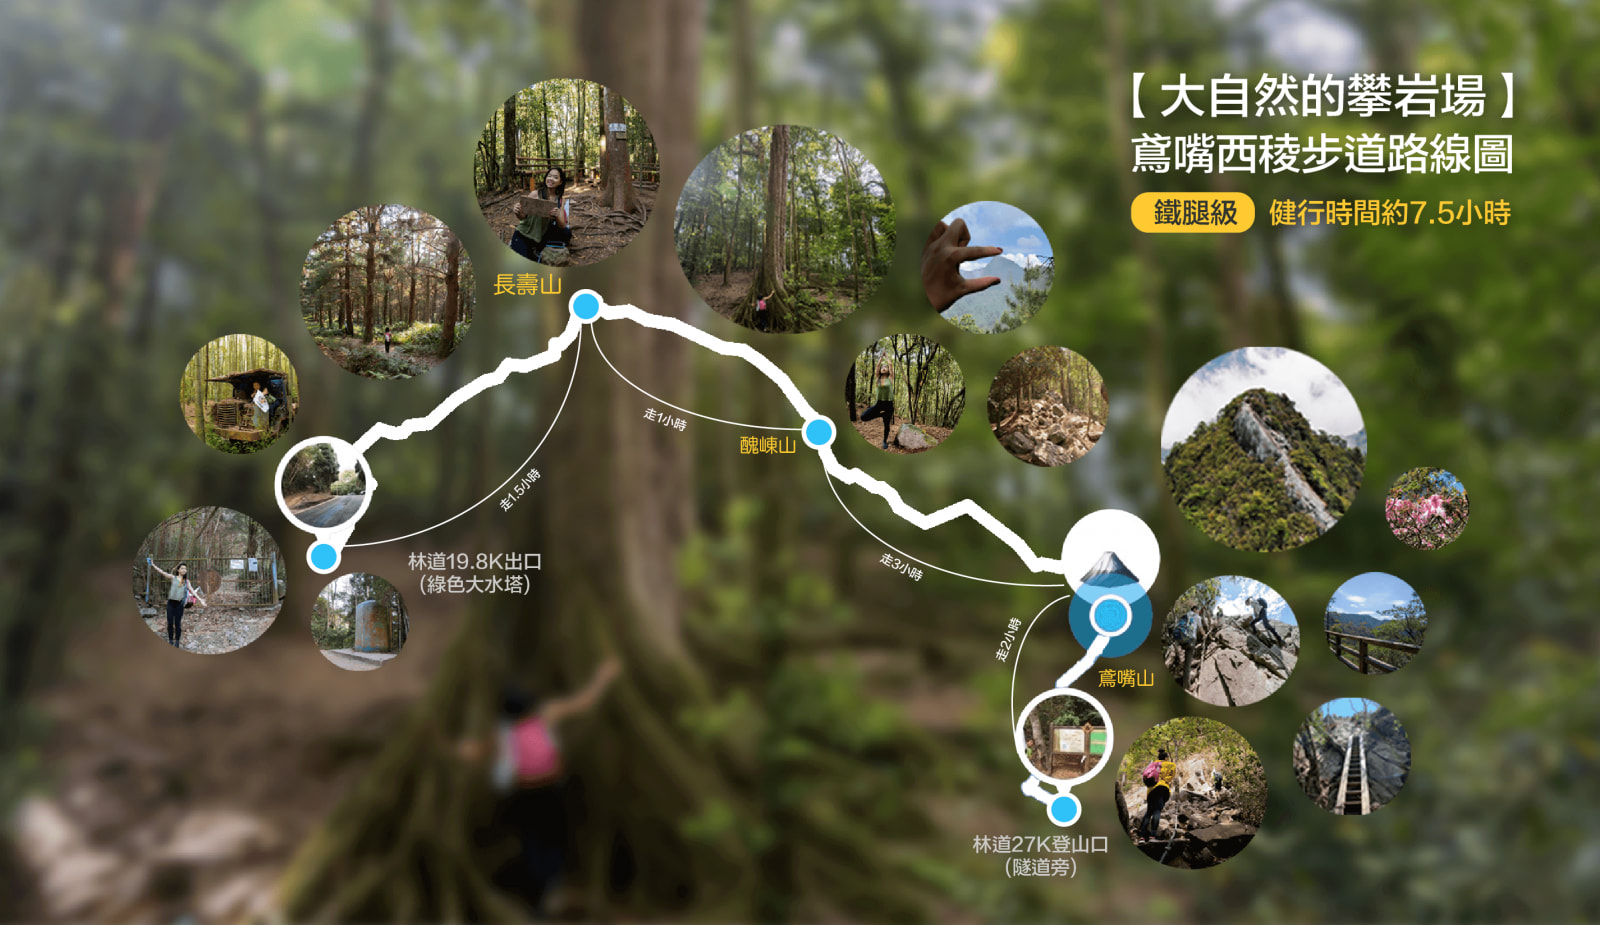 Taichung Yuanzui Xiling Trail Day Tour | Nature's Rock Climbing Field